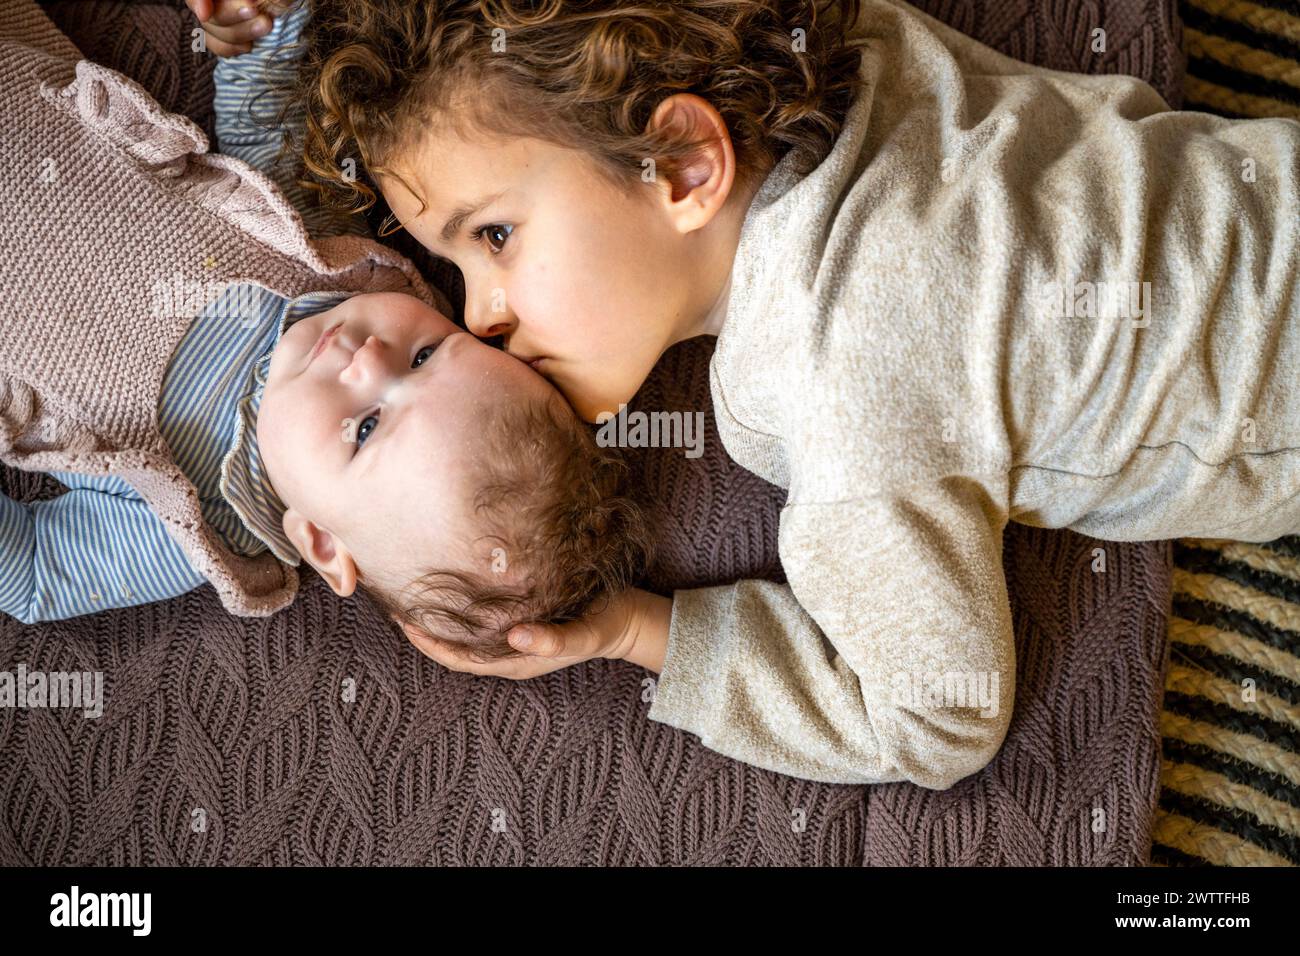 Un fratello più anziano dà un aspetto tenero a uno più giovane sdraiato su una coperta accogliente. Foto Stock